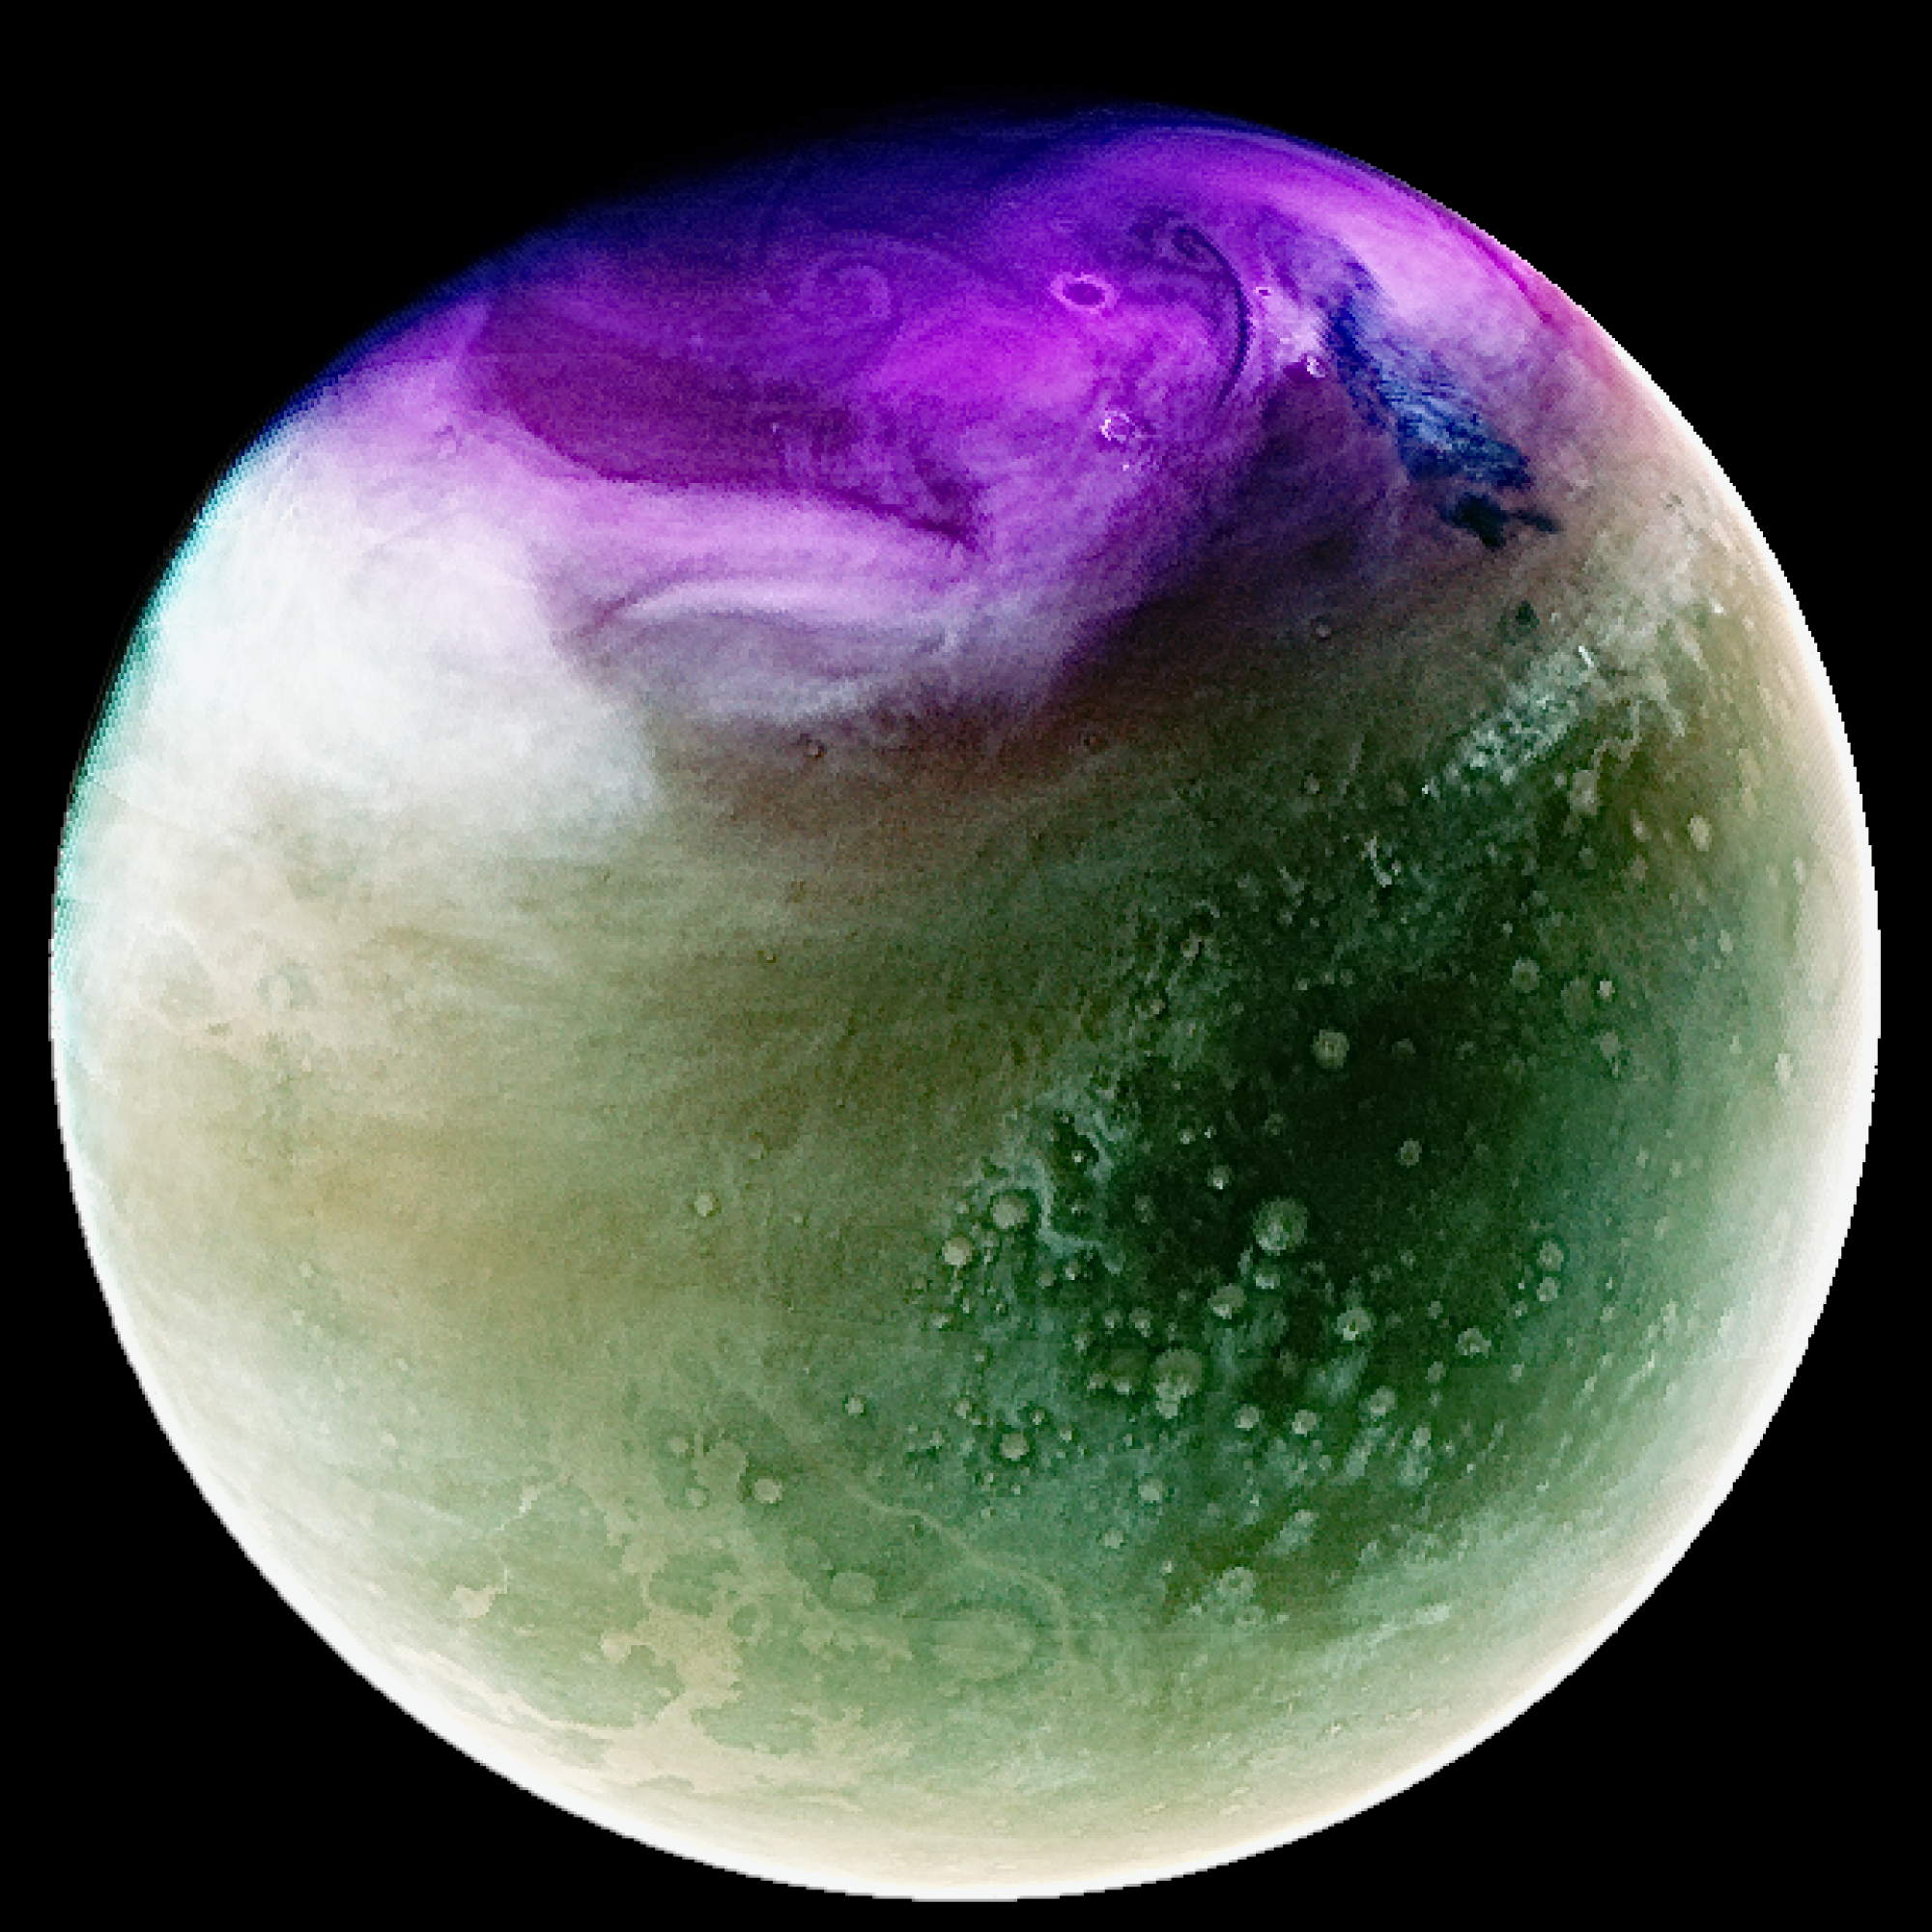 Seeing Mars in ultraviolet colors